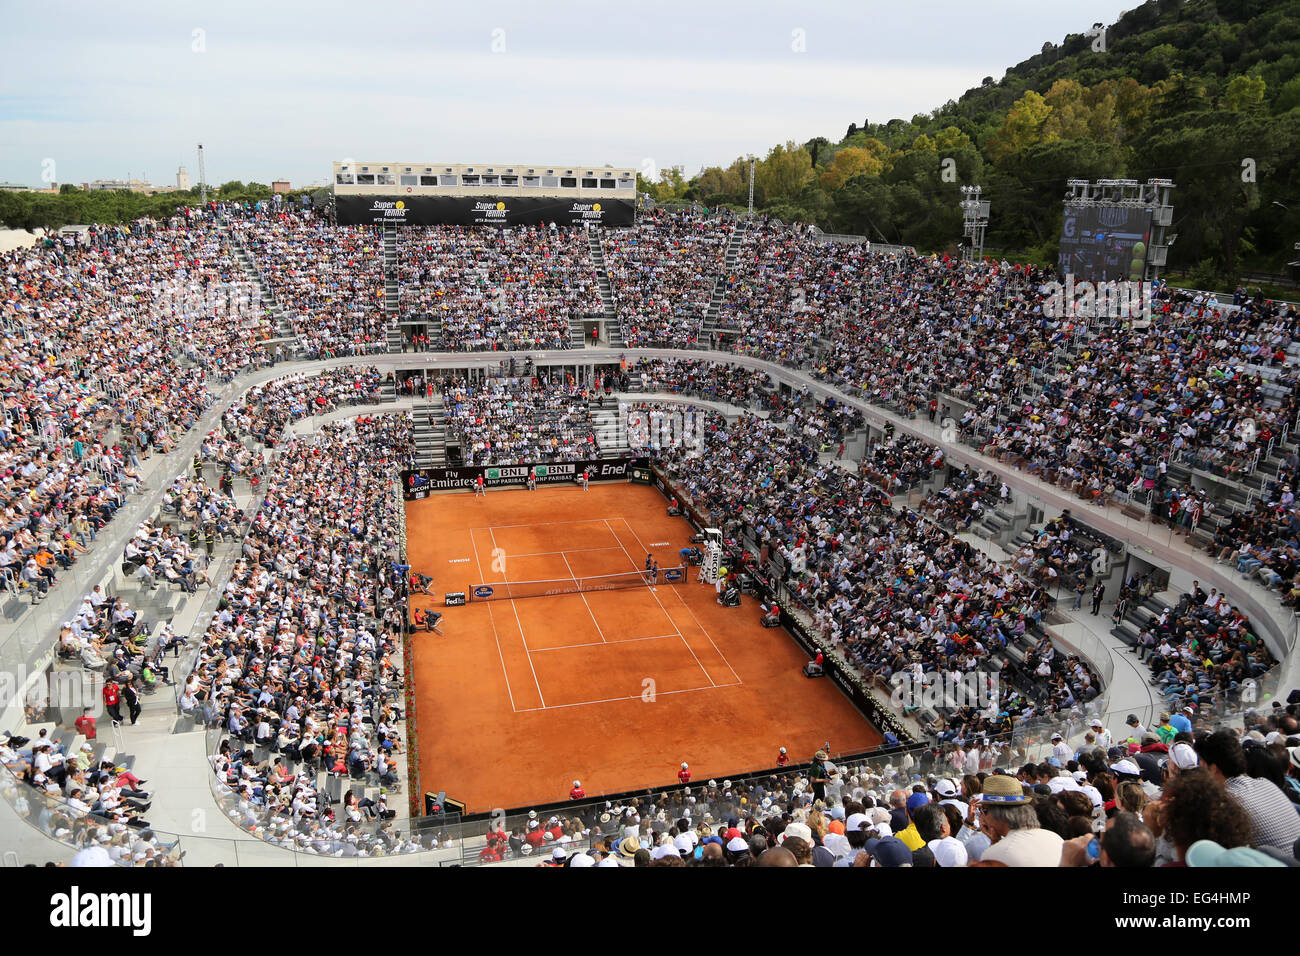 Italien, Rom: Eine allgemeine Ansicht zeigt das zentrale Gericht während  der ATP Rome Tennis Masters Finale zwischen Spaniens Rafael Nadal  Stockfotografie - Alamy